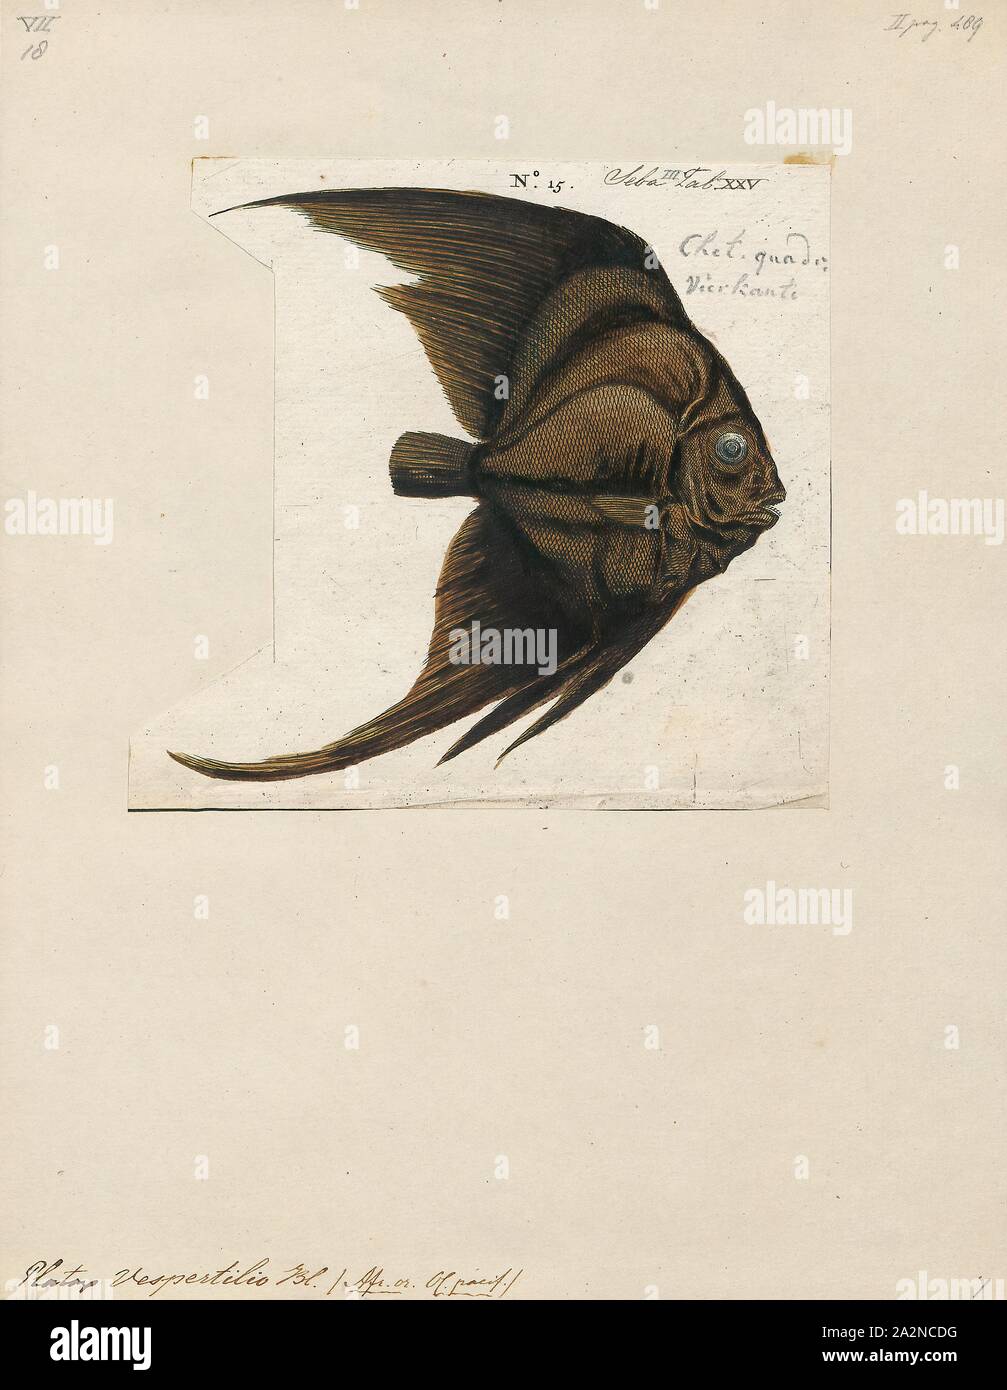 Platax vespertilio, Drucken, Platax ist eine Pflanzenart aus der Gattung der Indopazifischen, Riff-assoziierten Fisch aus der Familie der Ephippidae. Es gibt derzeit fünf bekannten rezenten Arten im Allgemeinen für die Gattung zu gehören. Sie einer der Fische Taxa gemeinhin bekannt als "fledermausfische"., 1700-1880 Stockfoto